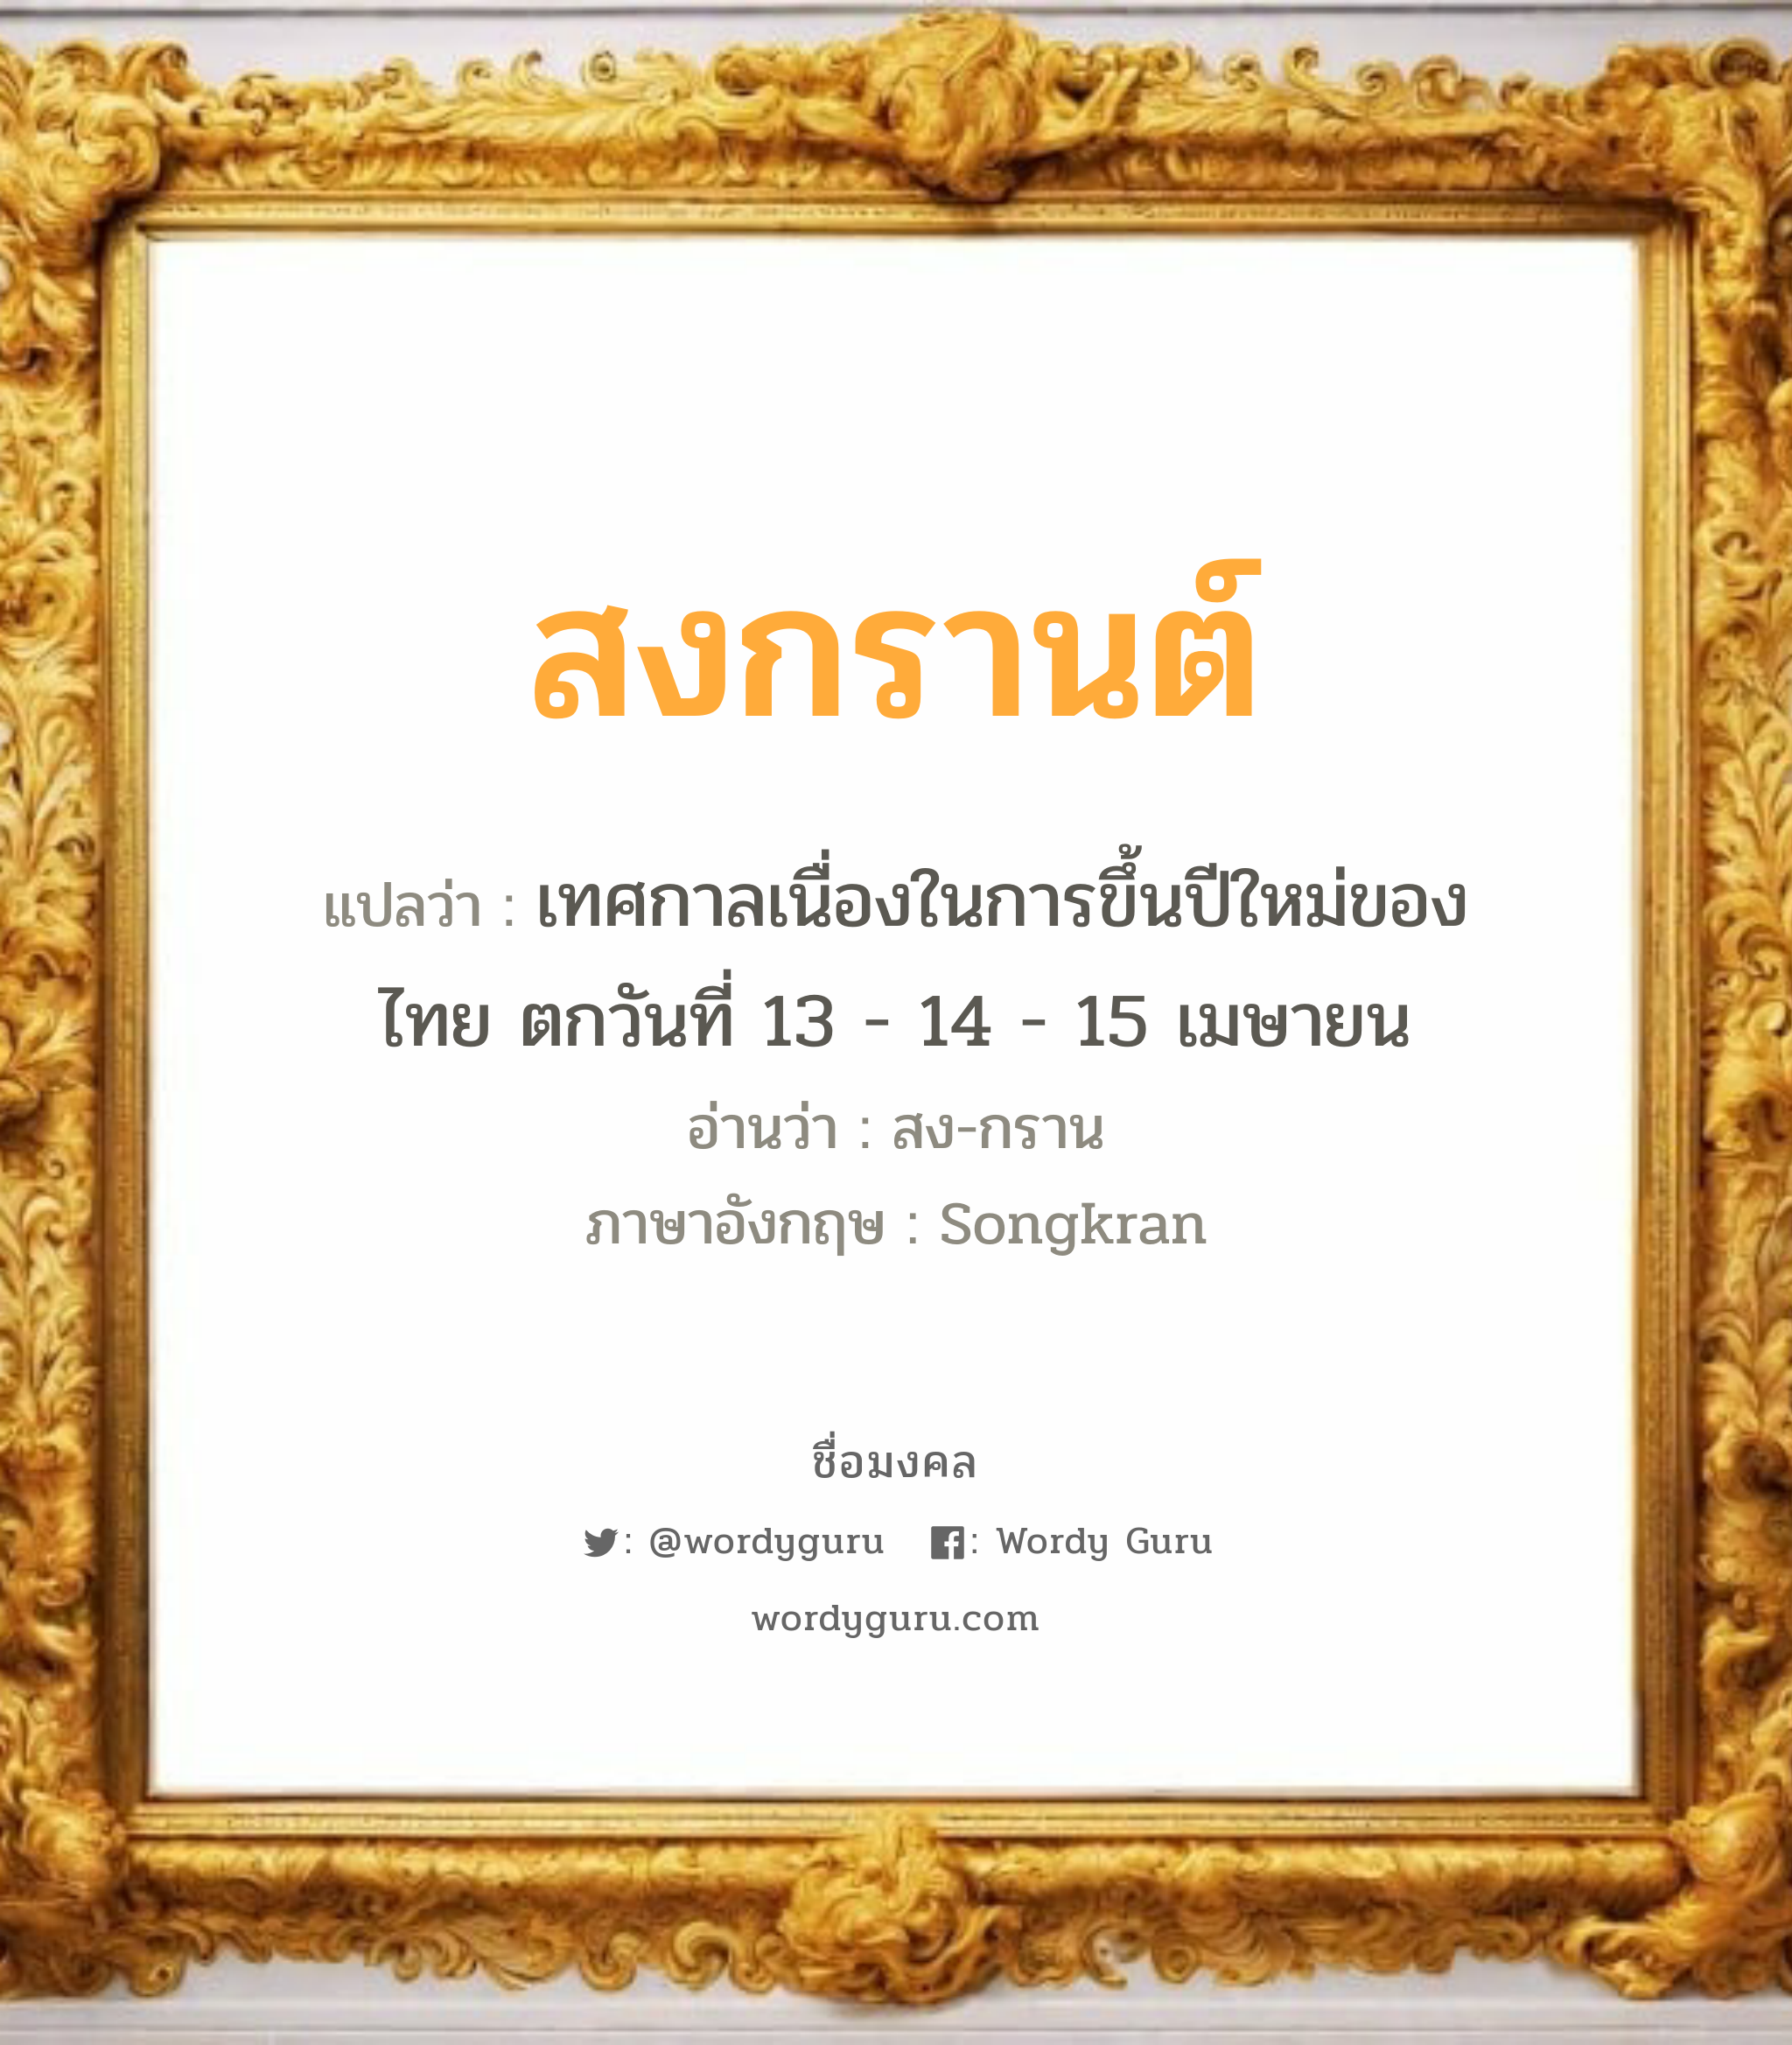 สงกรานต์ แปลว่า? วิเคราะห์ชื่อ สงกรานต์, ชื่อมงคล สงกรานต์ แปลว่า เทศกาลเนื่องในการขึ้นปีใหม่ของไทย ตกวันที่ 13 - 14 - 15 เมษายน อ่านว่า สง-กราน ภาษาอังกฤษ Songkran เพศ เหมาะกับ ผู้ชาย, ลูกชาย หมวด วันมงคล วันพุธกลางวัน, วันพุธกลางคืน, วันเสาร์